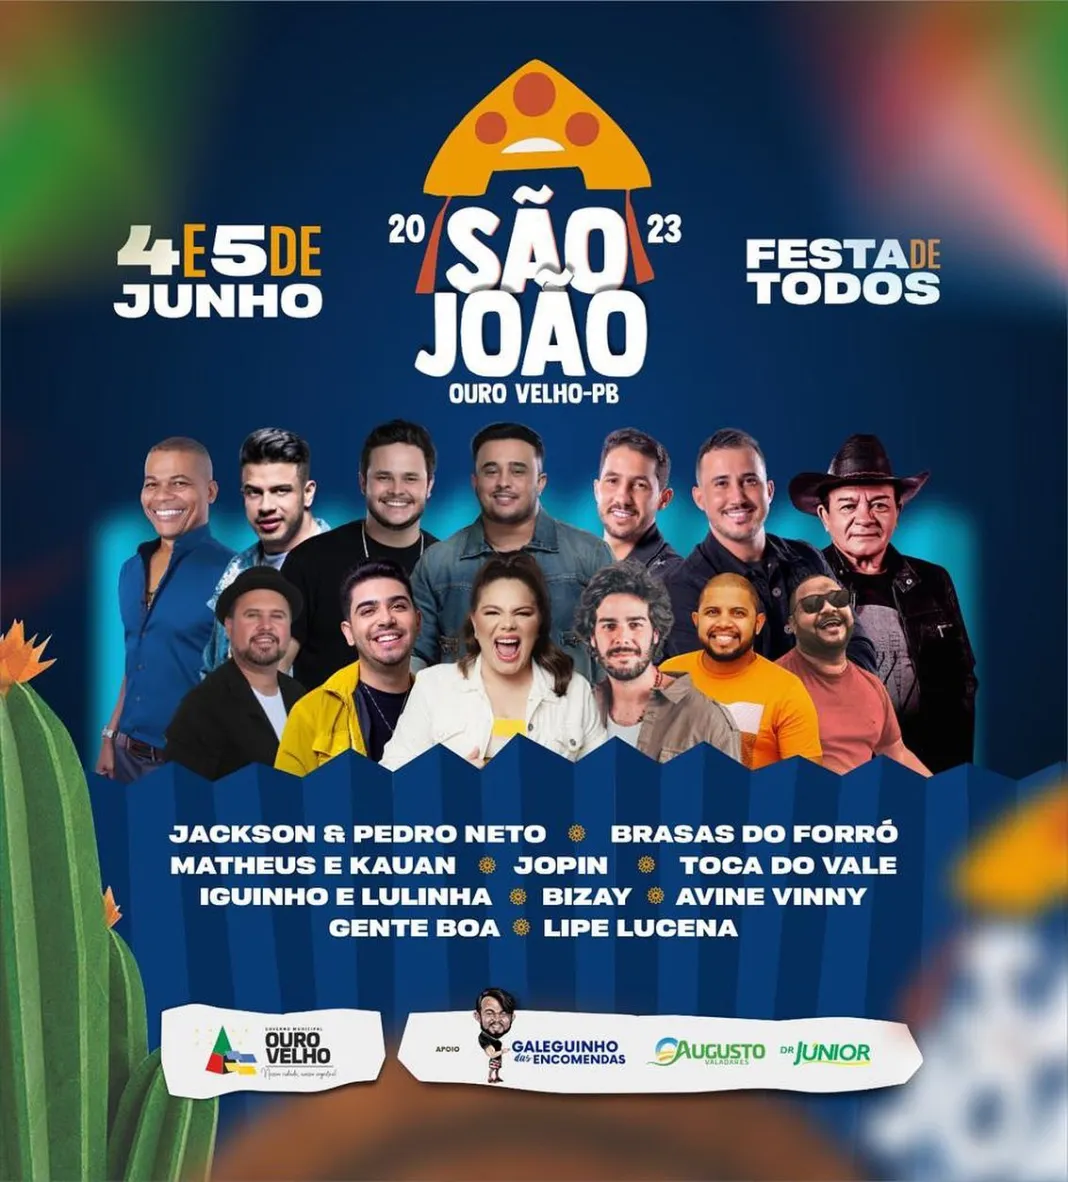 blog27-6 São João de Ouro Velho começa neste domingo e terá grandes atrações musicais